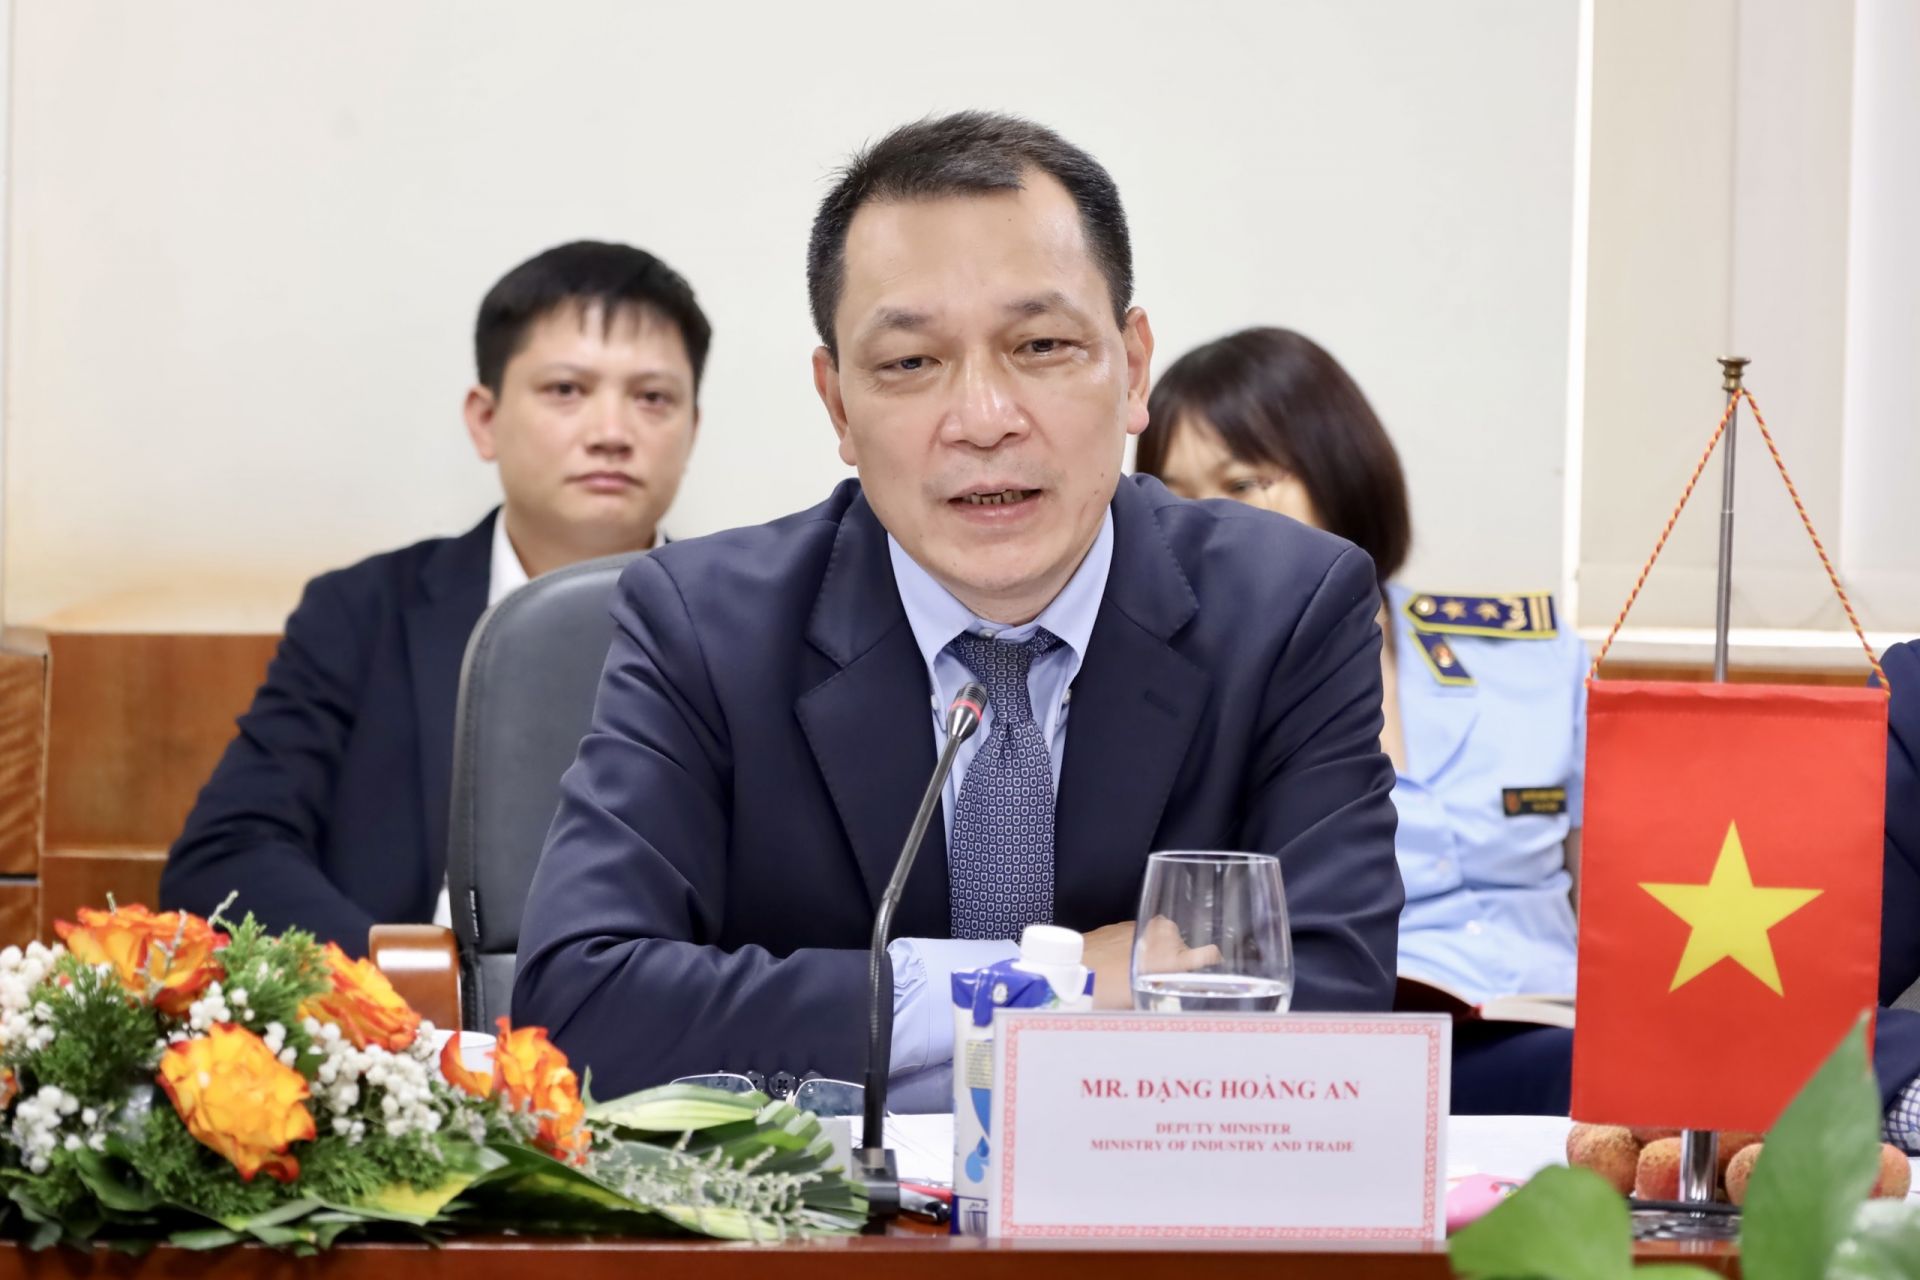 Hội đàm Bộ Công Thương, Tổng cục Quản lý thị trường Việt Nam và Tổng cục Quản lý giám sát thị trường Nhà nước Trung Quốc